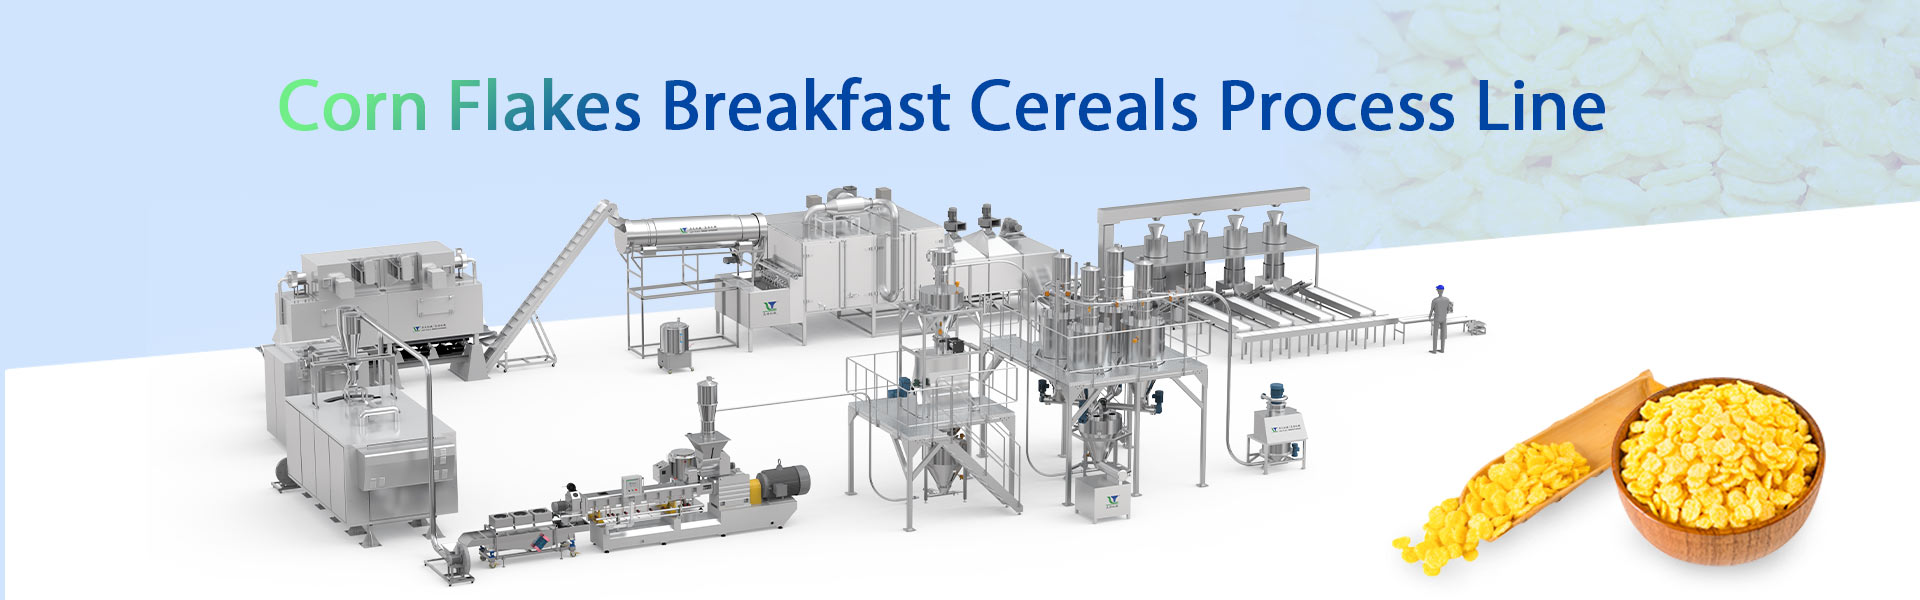 رقائق الذرة - الإفطار - الحبوب - خط المعالجة